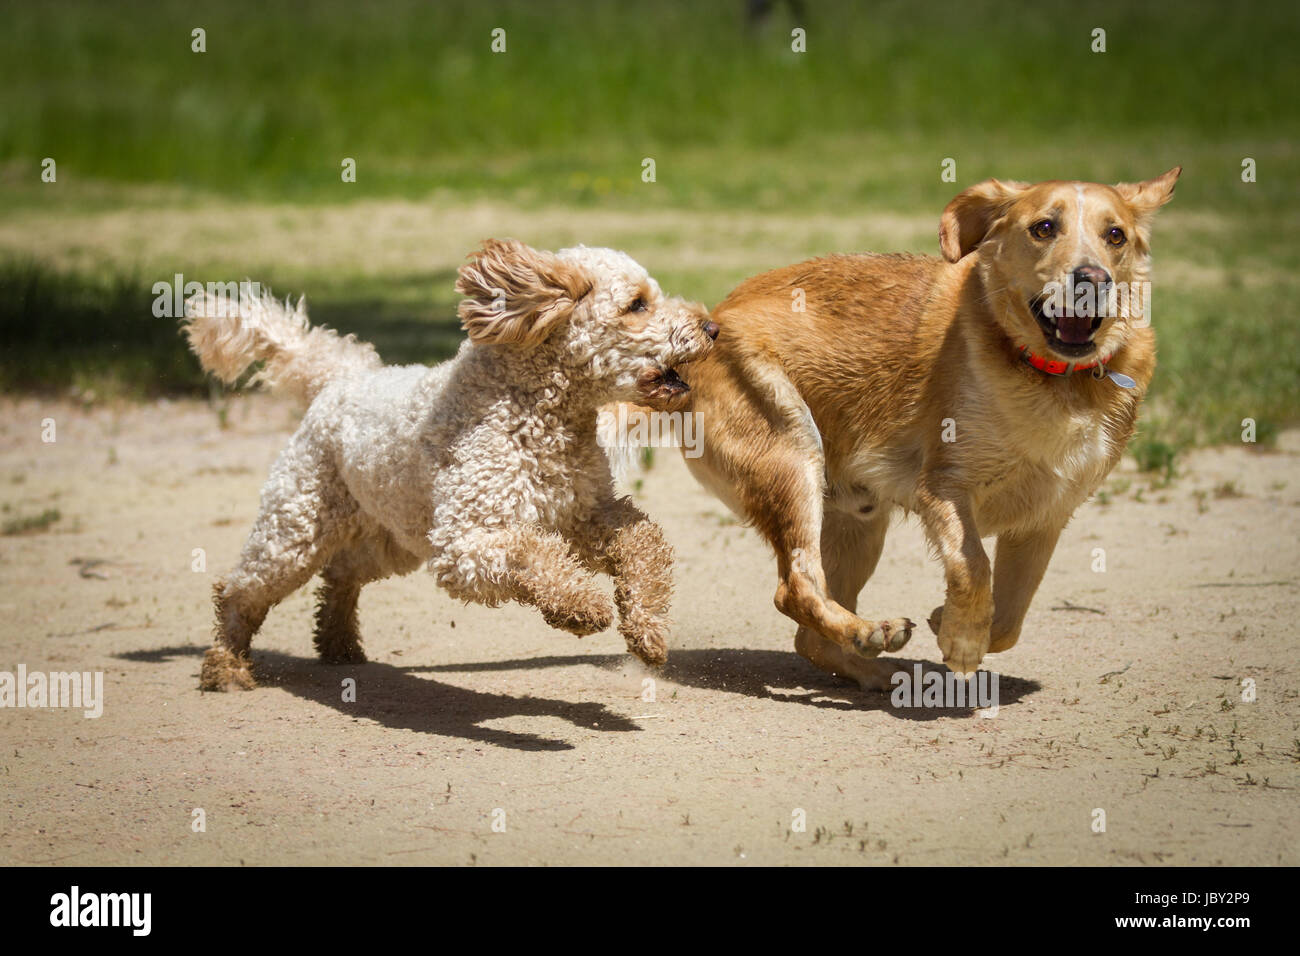 Ein Labradoodle und ein Labrador rennen gemeinsam durch den Sand und jagen sich gegenseitig. Foto Stock